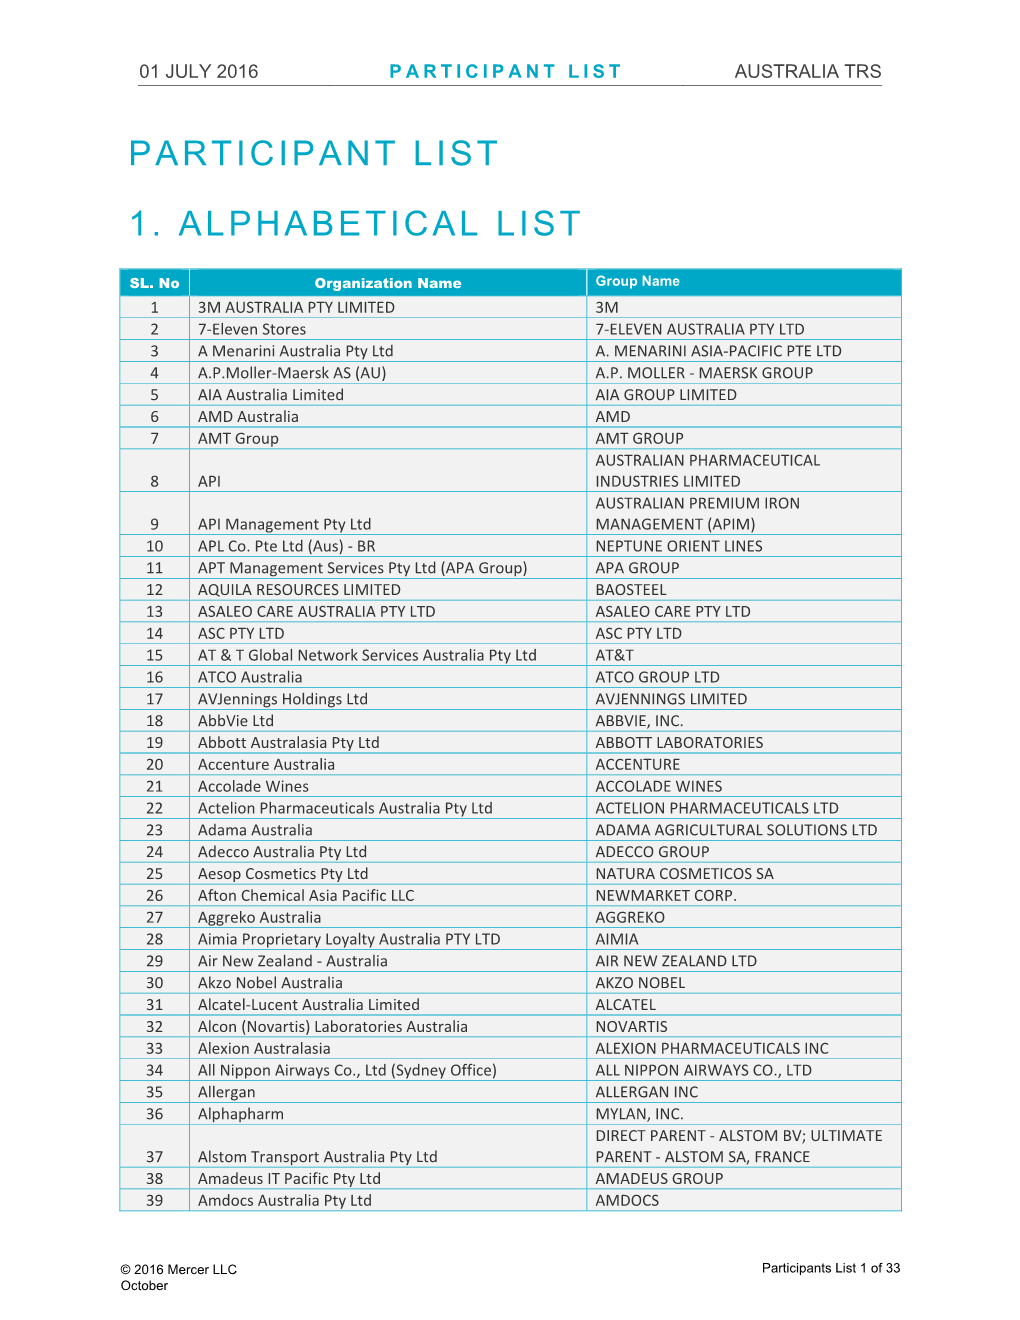 Participant List 1. Alphabetical List